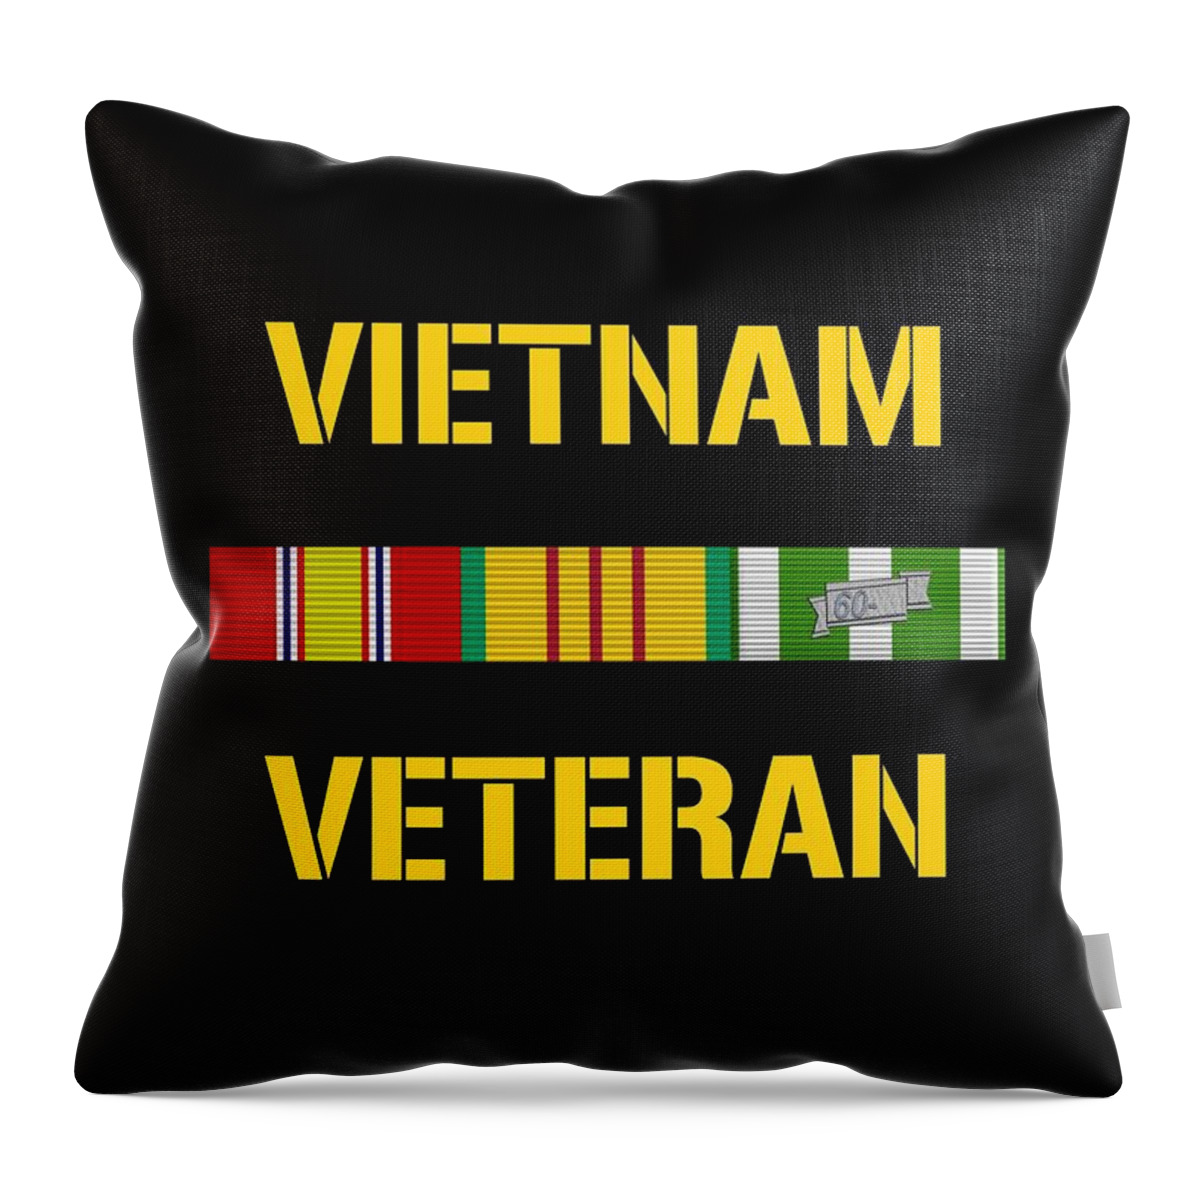 Vietnam Veteran Throw Pillow featuring the digital art Vietnam Veteran Ribbon Bar by War Is Hell Store